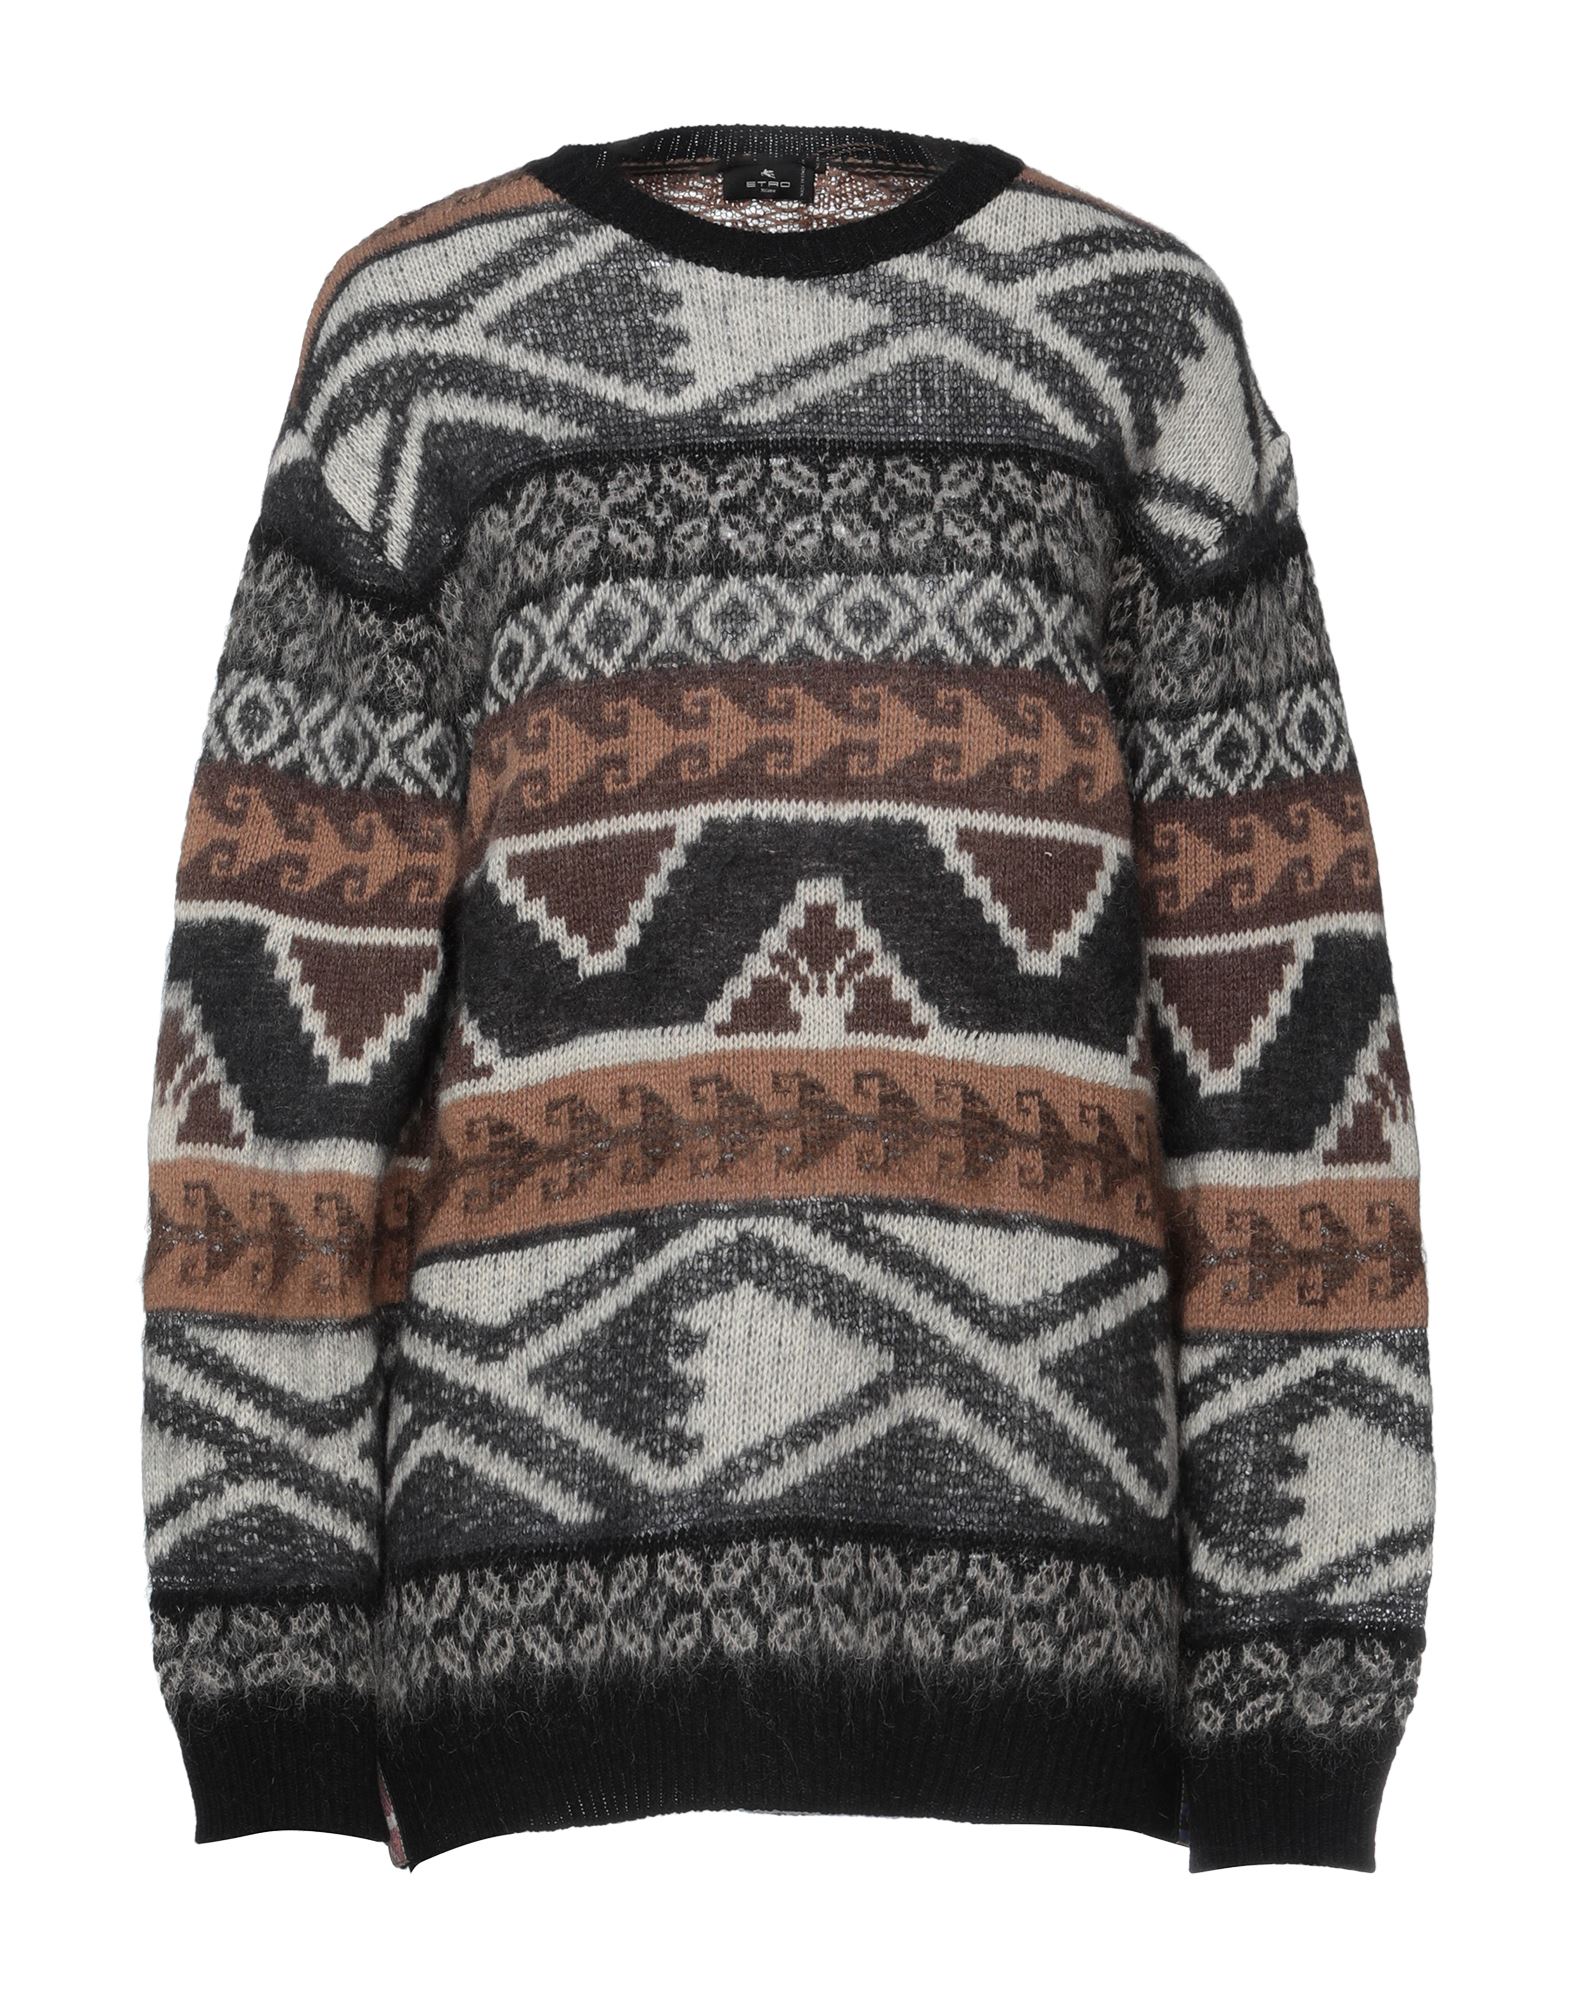 Shop Etro Woman Sweater Steel Grey Size 6 Wool, Alpaca Wool, Mohair Wool, Nylon, Polyester